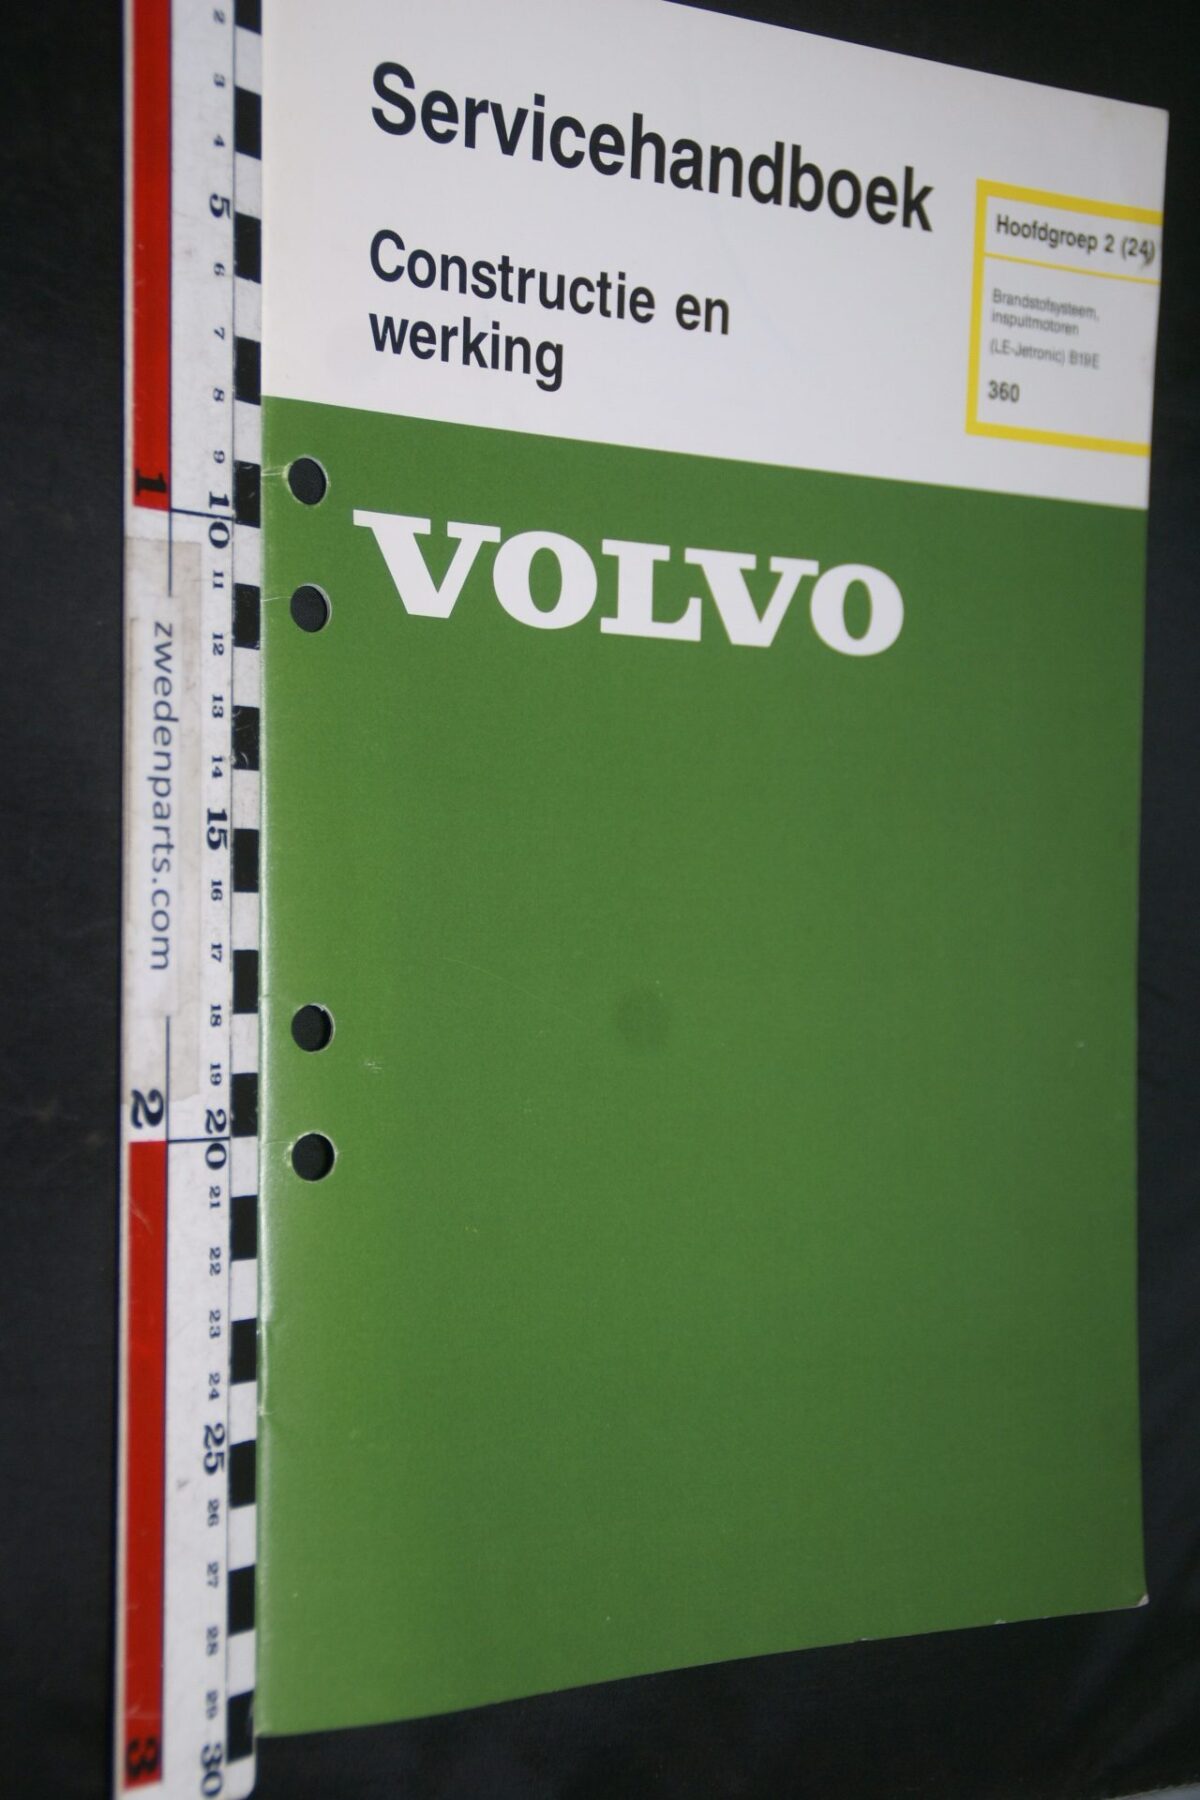 DSC07234 1983 origineel Volvo 360 servicehandboek  2(24) LE Jetronic 1 van 800 TP 35154-1